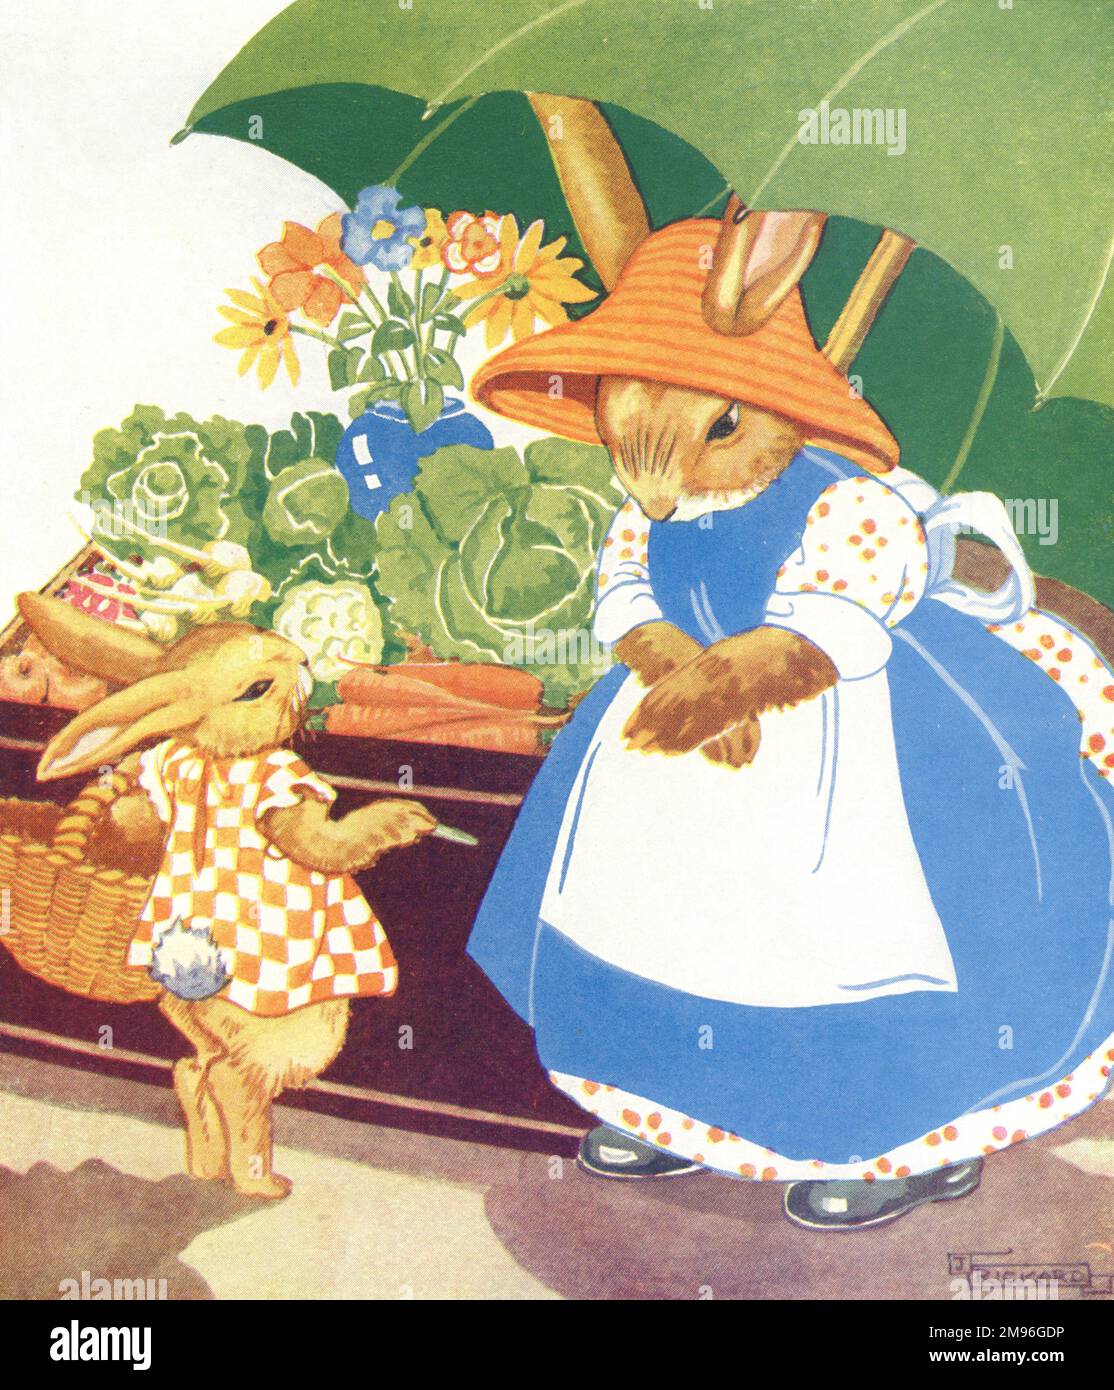 Die Kaninchenmutter bleibt unter einem großen grünen Regenschirm, während das Kaninchen entscheidet, welches Gemüse in den Warenkorb gelegt wird. Stockfoto